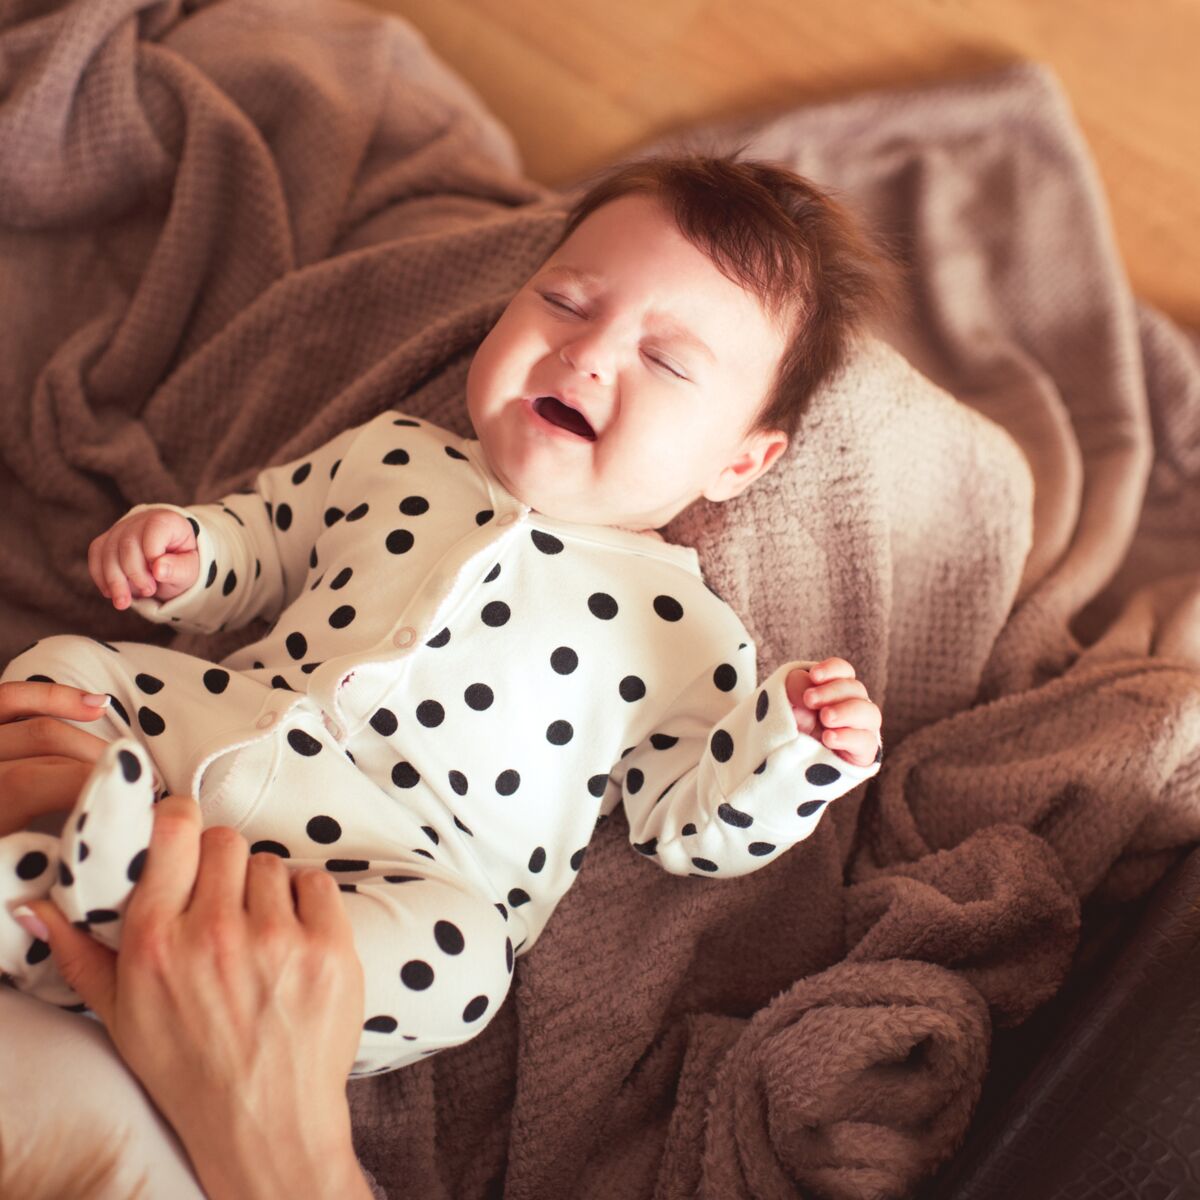 Bébé : que faire en cas de coliques du nourrisson ?